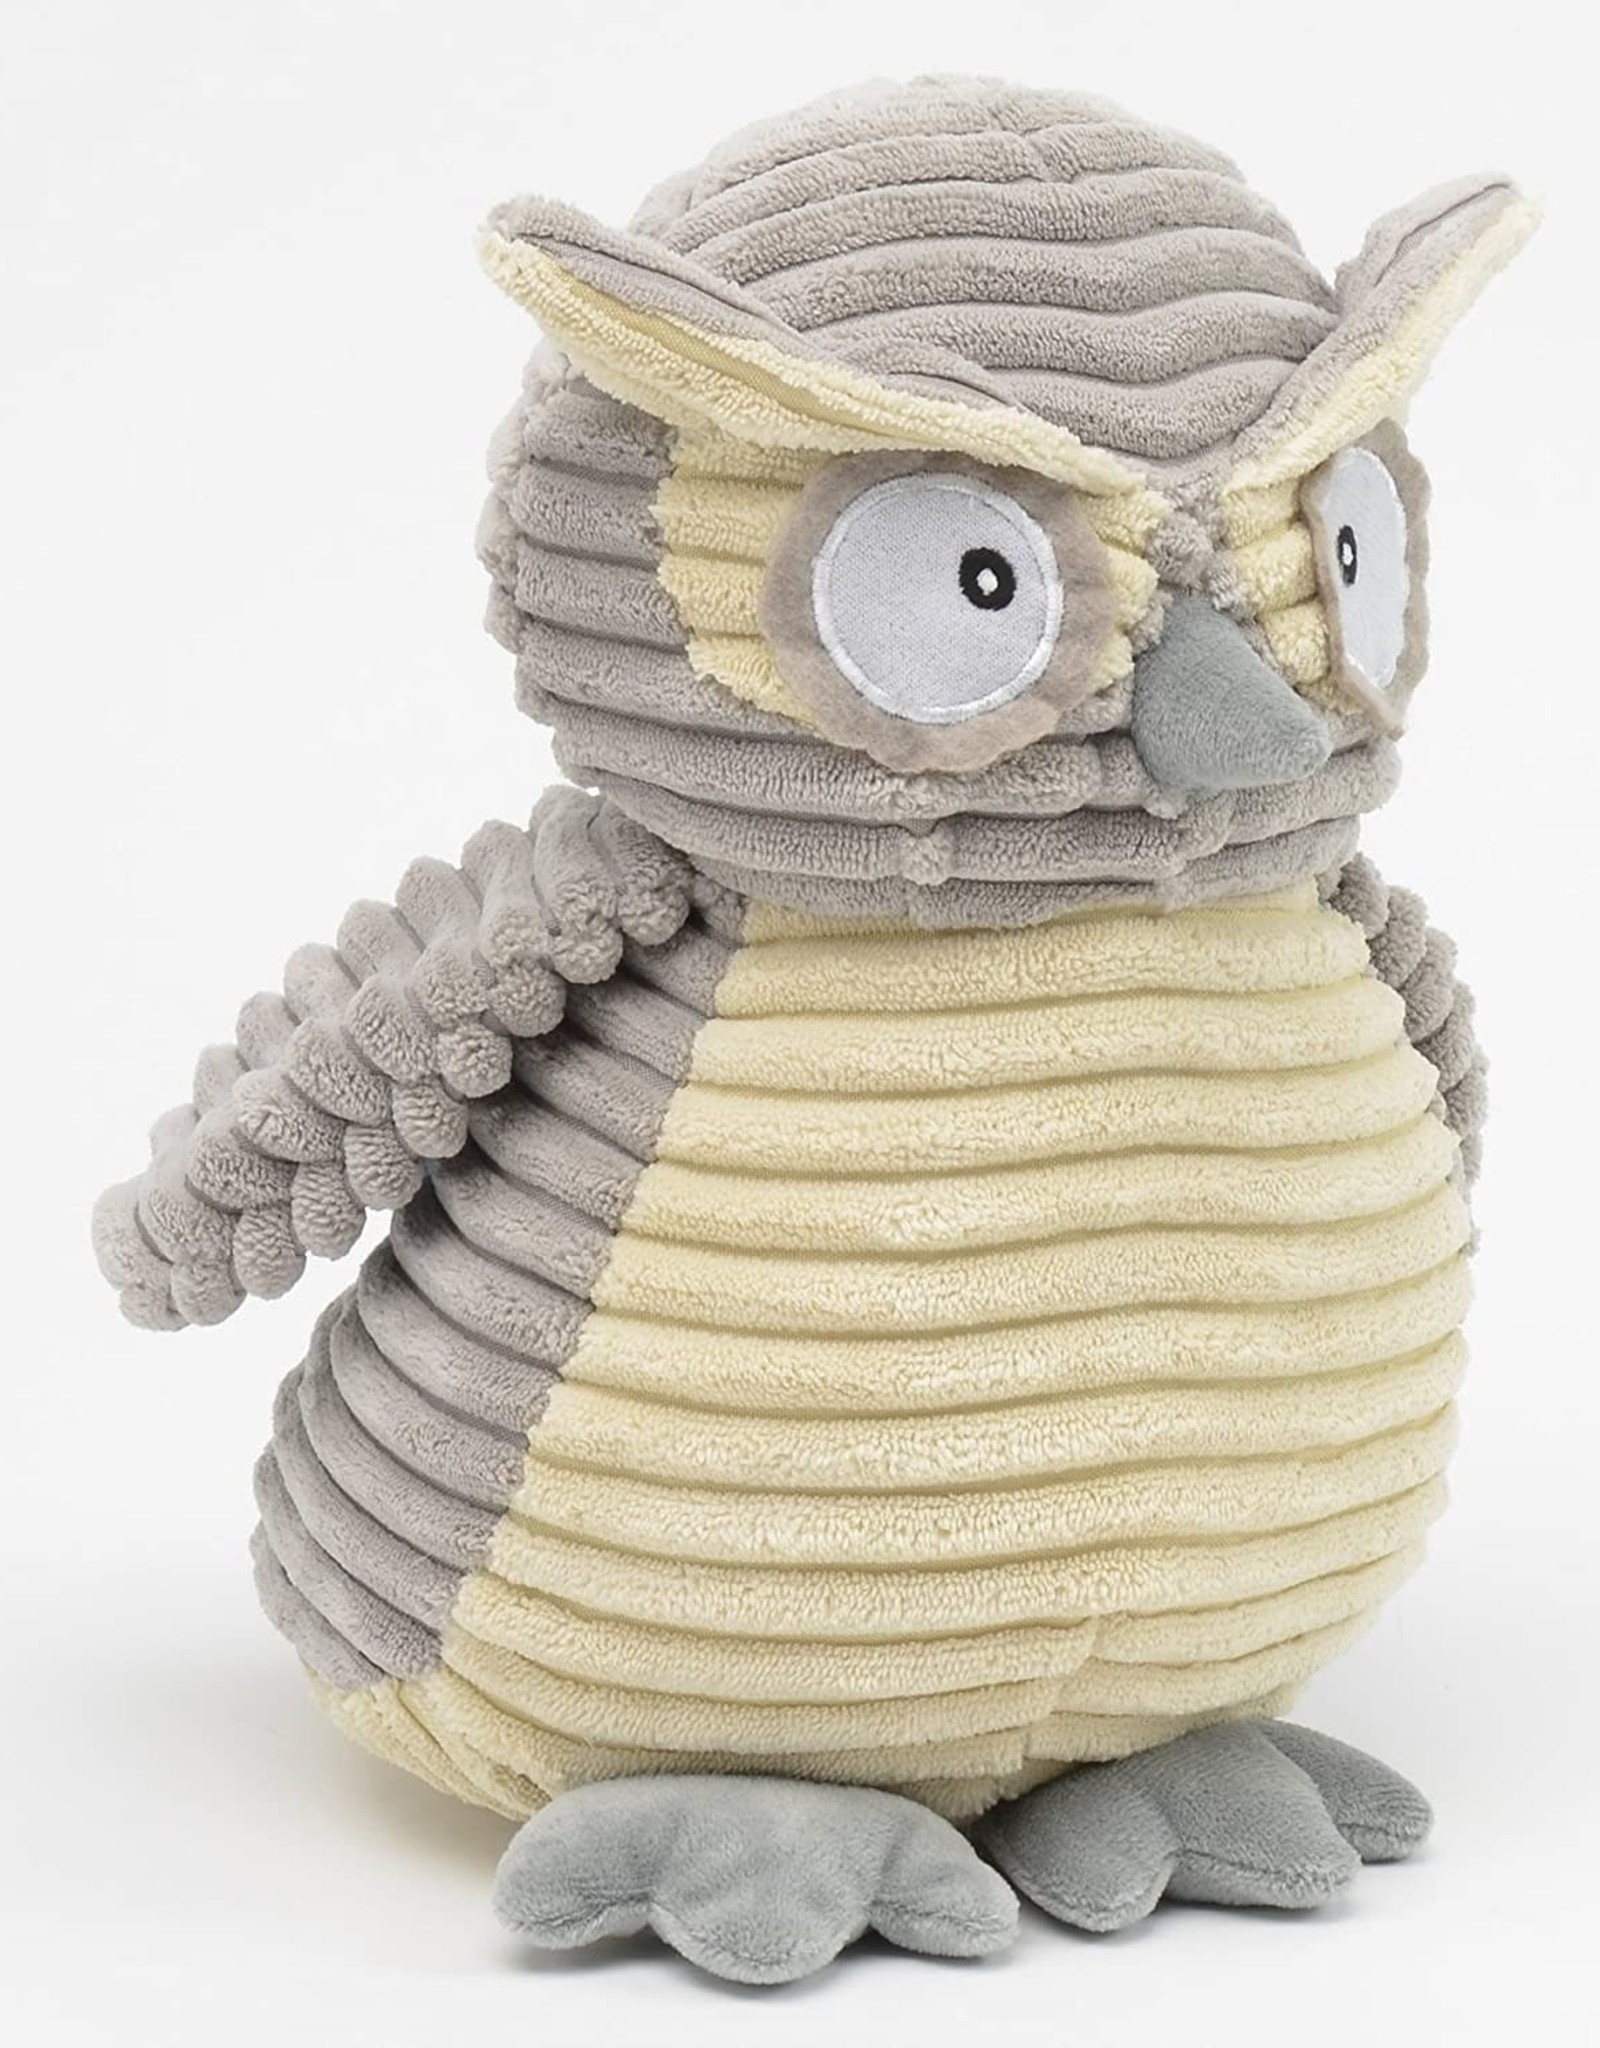 Plush - Kordy Jr. Owl 10